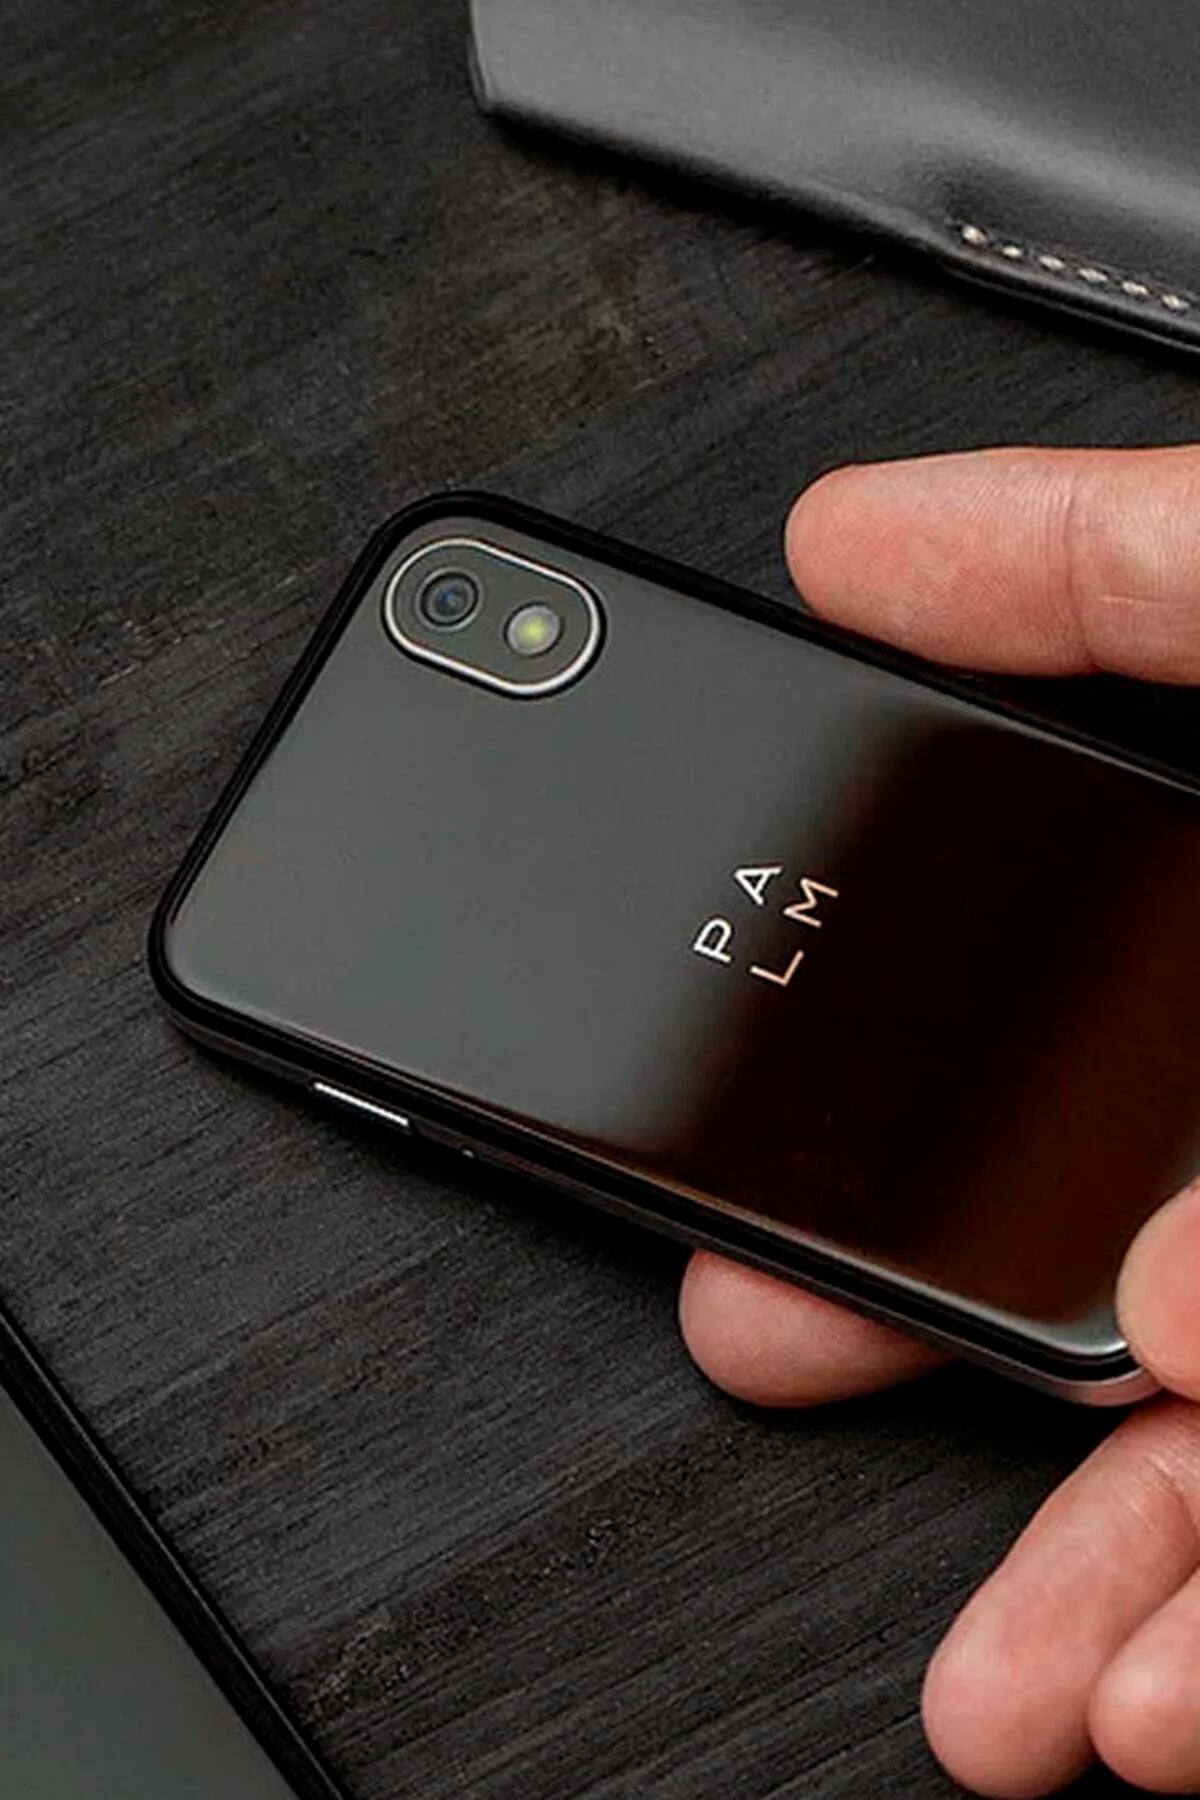 Palm vuelve al mercado con un mini Smartphone de tres pulgadas, Smartphones